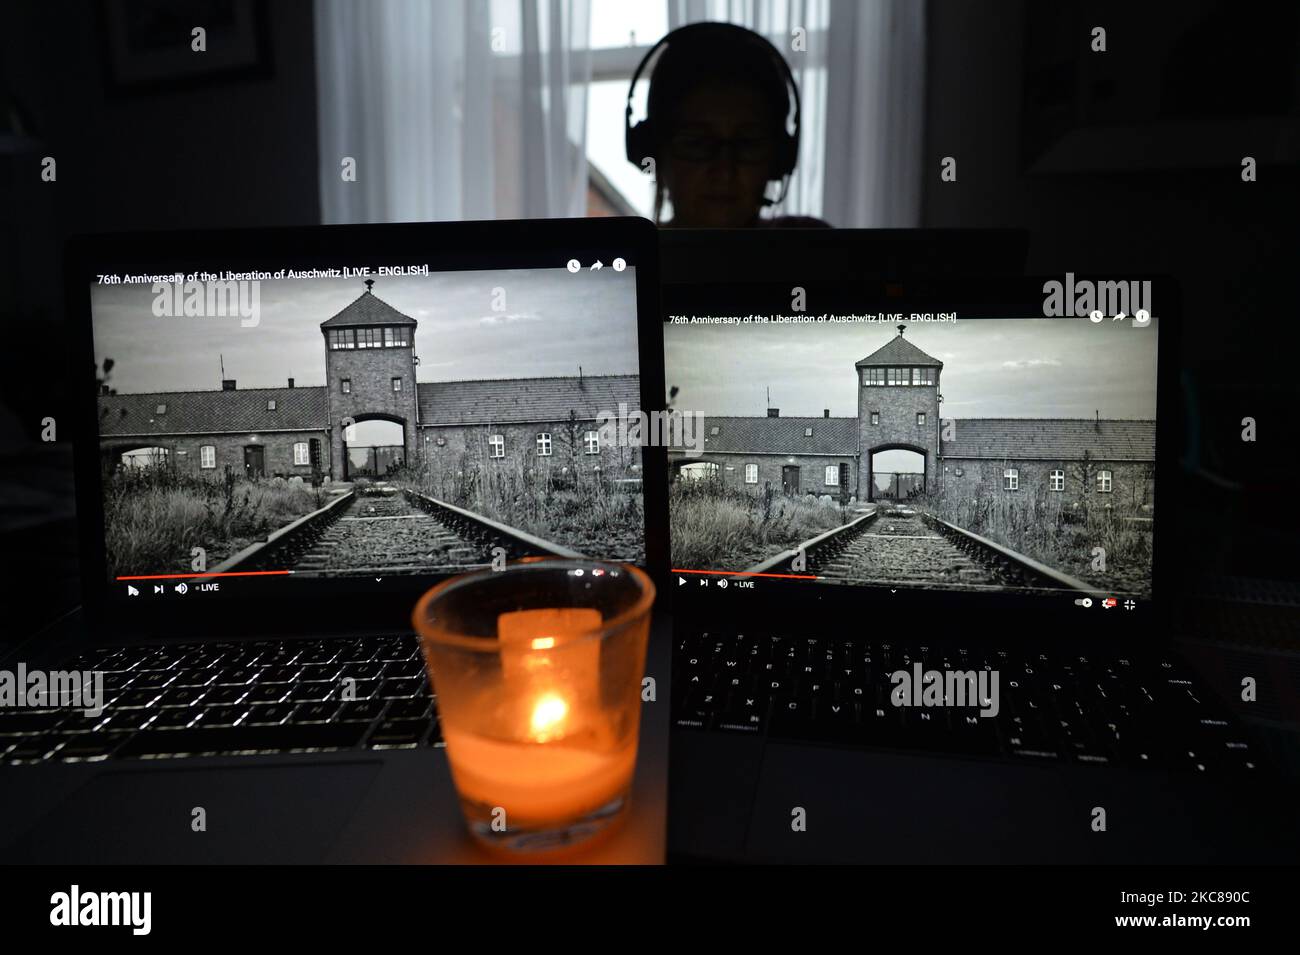 Una persona guarda le immagini di Auschwitz durante la commemorazione online del 76th° anniversario della liberazione del campo di concentramento e sterminio nazista tedesco di Auschwitz. A causa della pandemia di coronavirus, l'evento commemorativo si svolge online. Mercoledì 27 gennaio 2021 a Dublino, Irlanda. (Foto di Artur Widak/NurPhoto) Foto Stock